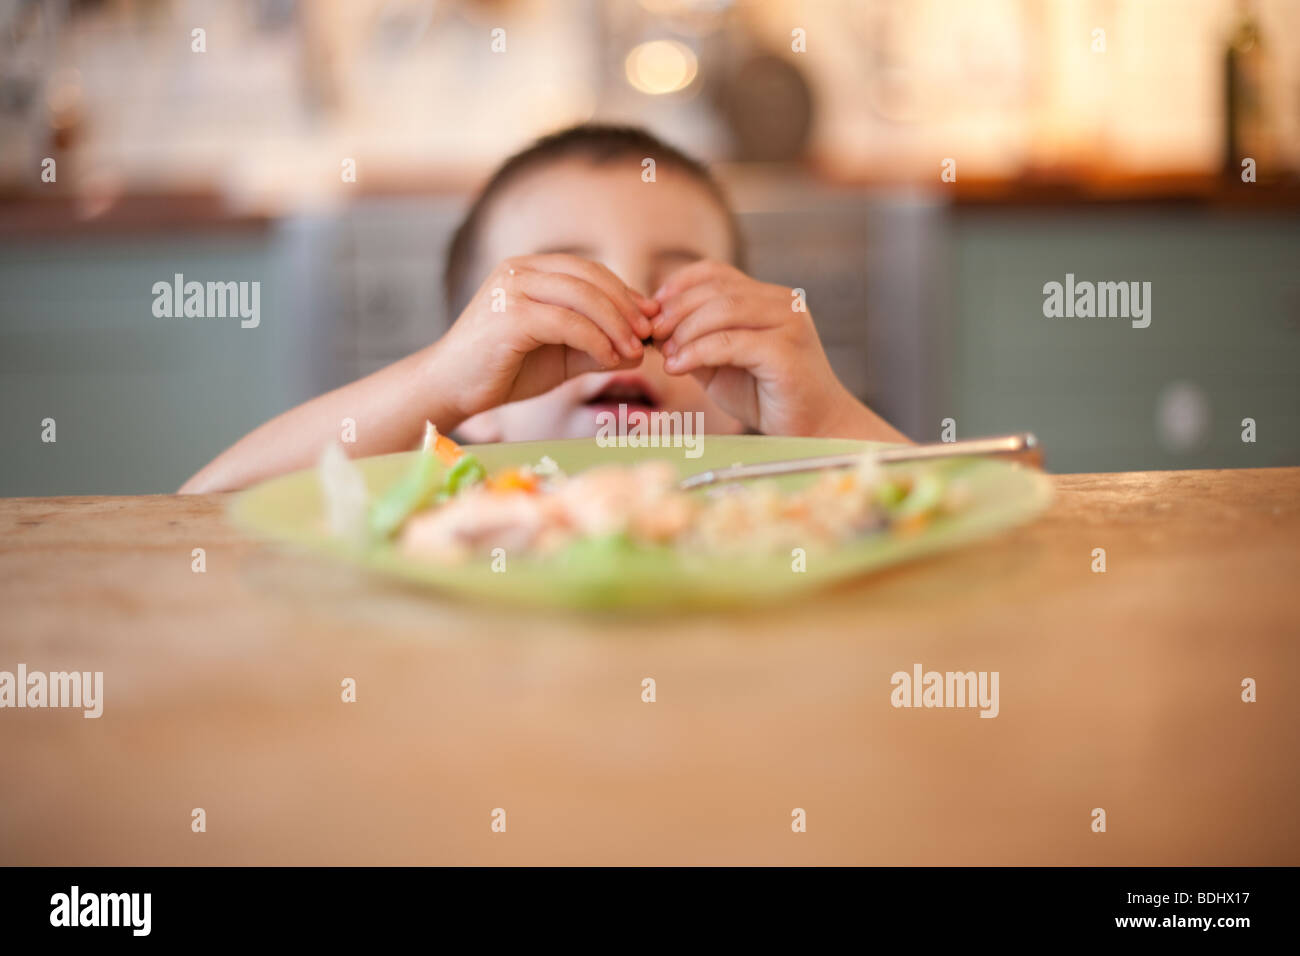 Hijo de 3 años está haciendo caso omiso de su comida en la mesa de la cena Foto de stock